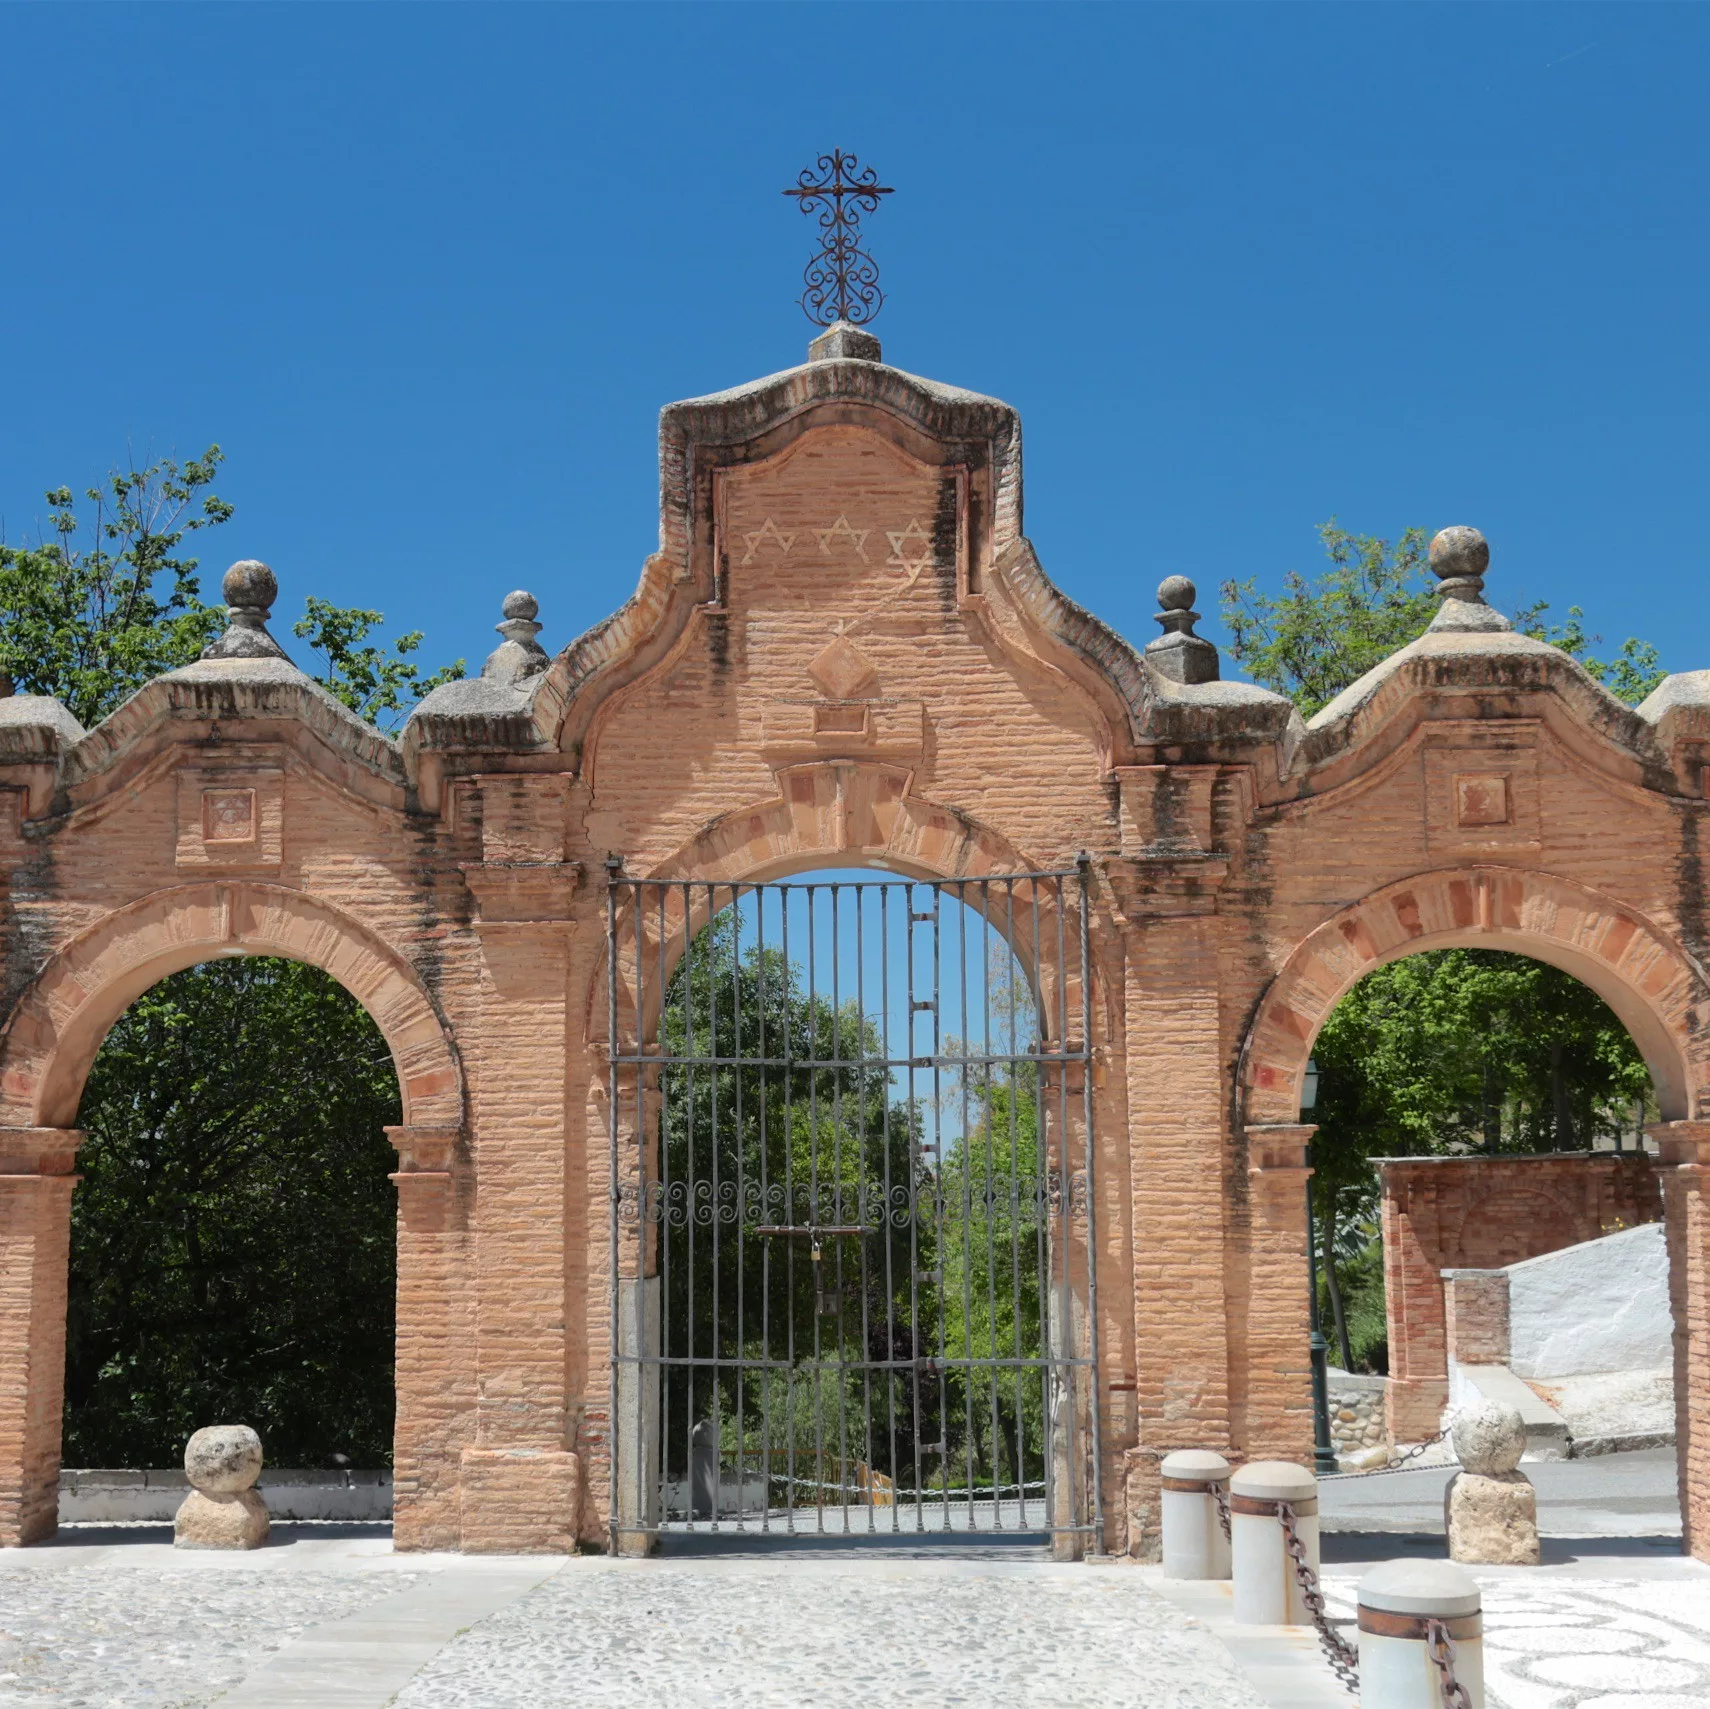 the Sacromonte Abbey in granada